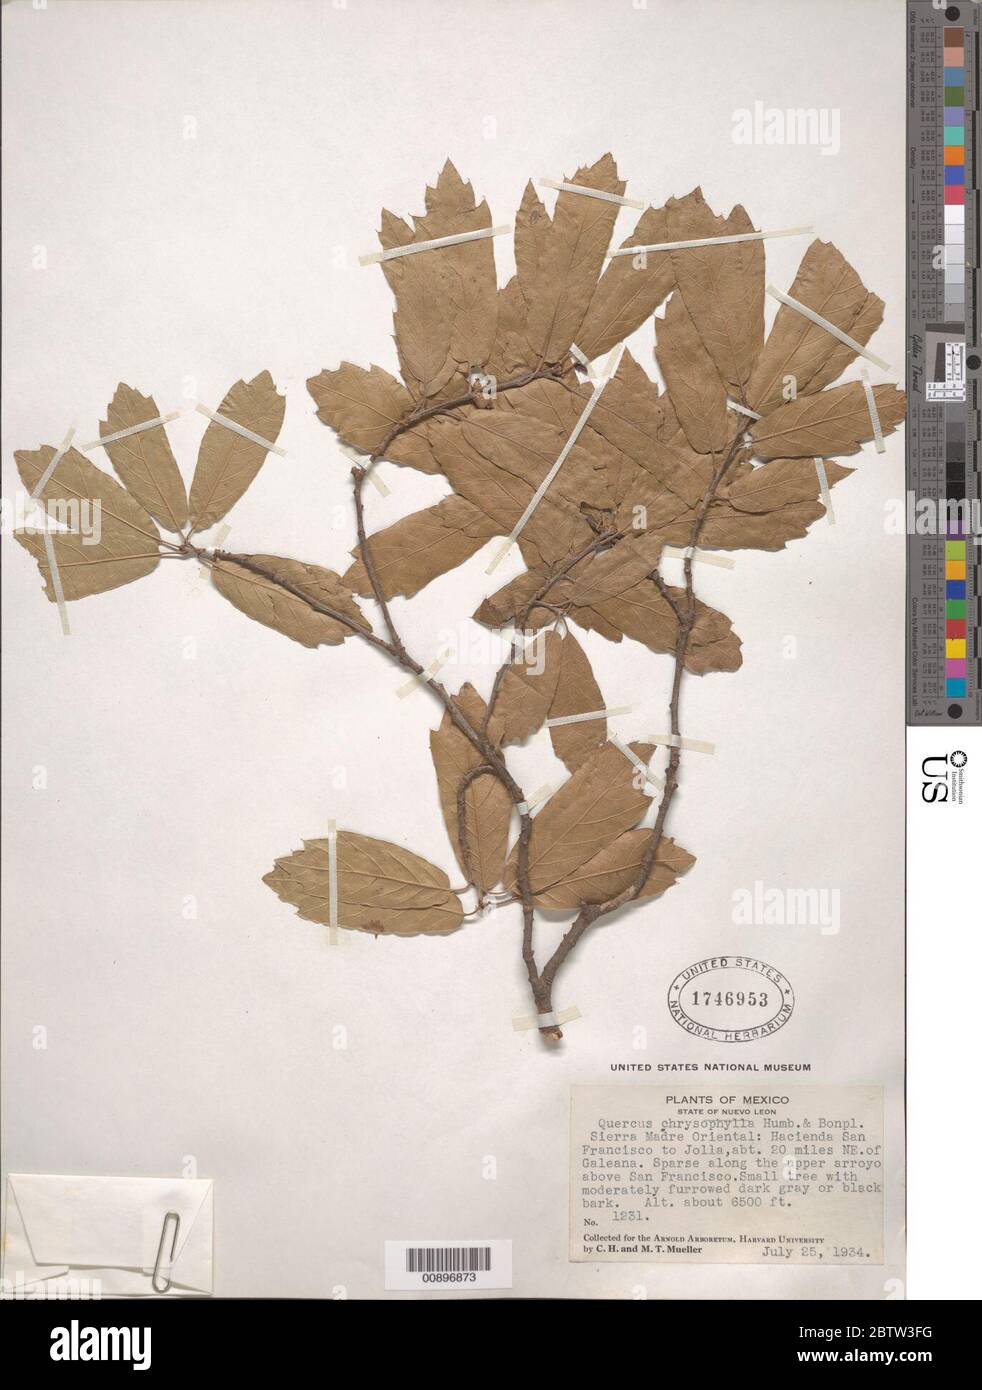 Quercus chrysophylla Humb Bonpl. Stock Photo